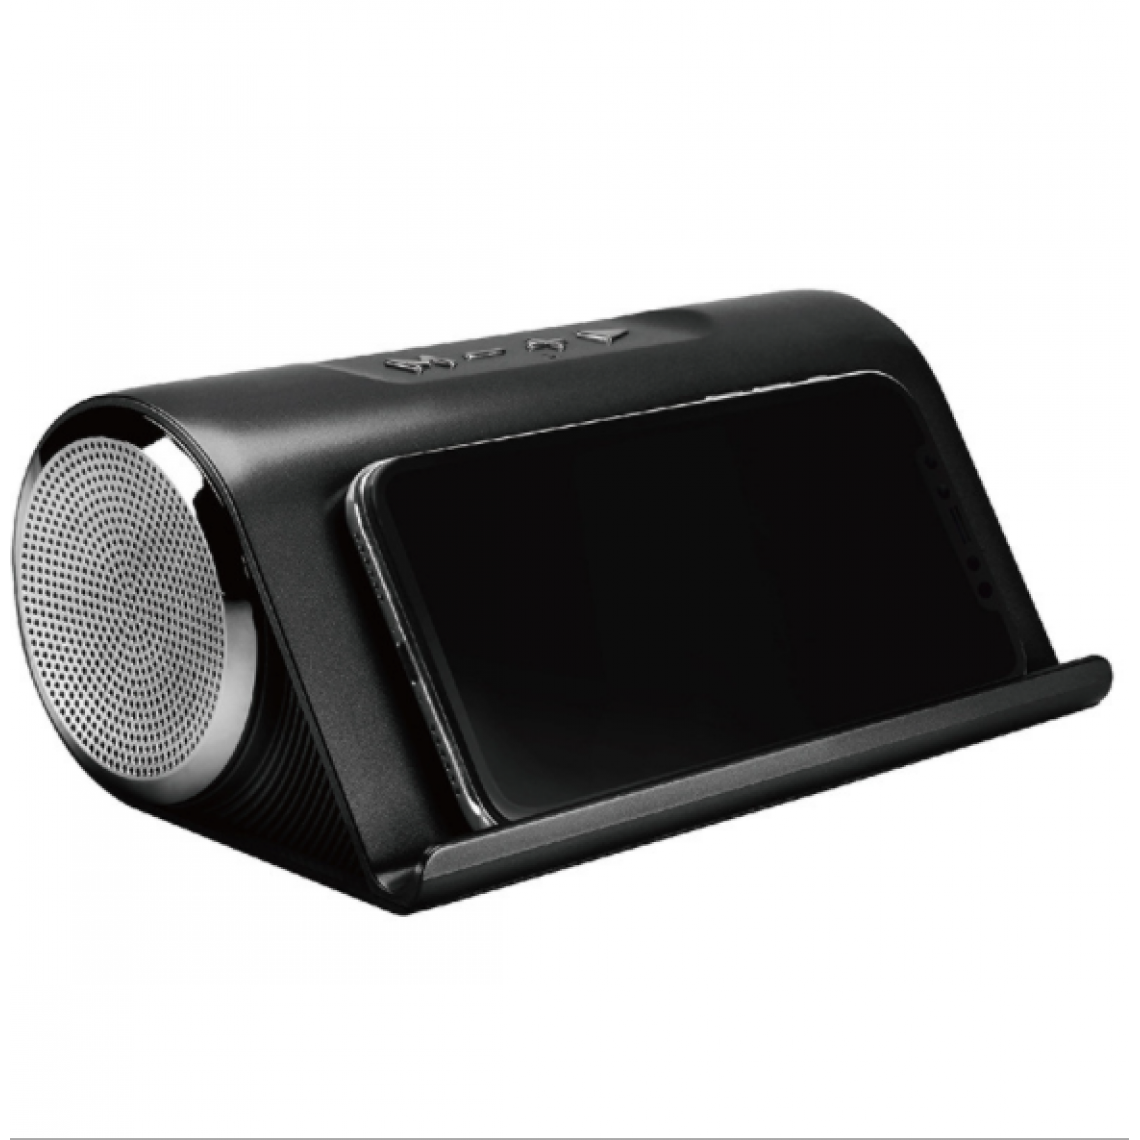 Chrono - Haut-parleur Bluetooth, sans fil, 83 dB, subwoofer, portable, SuperBass, adapté aux smartphones, tablettes, ordinateurs(Noir brillant) - Enceintes Hifi